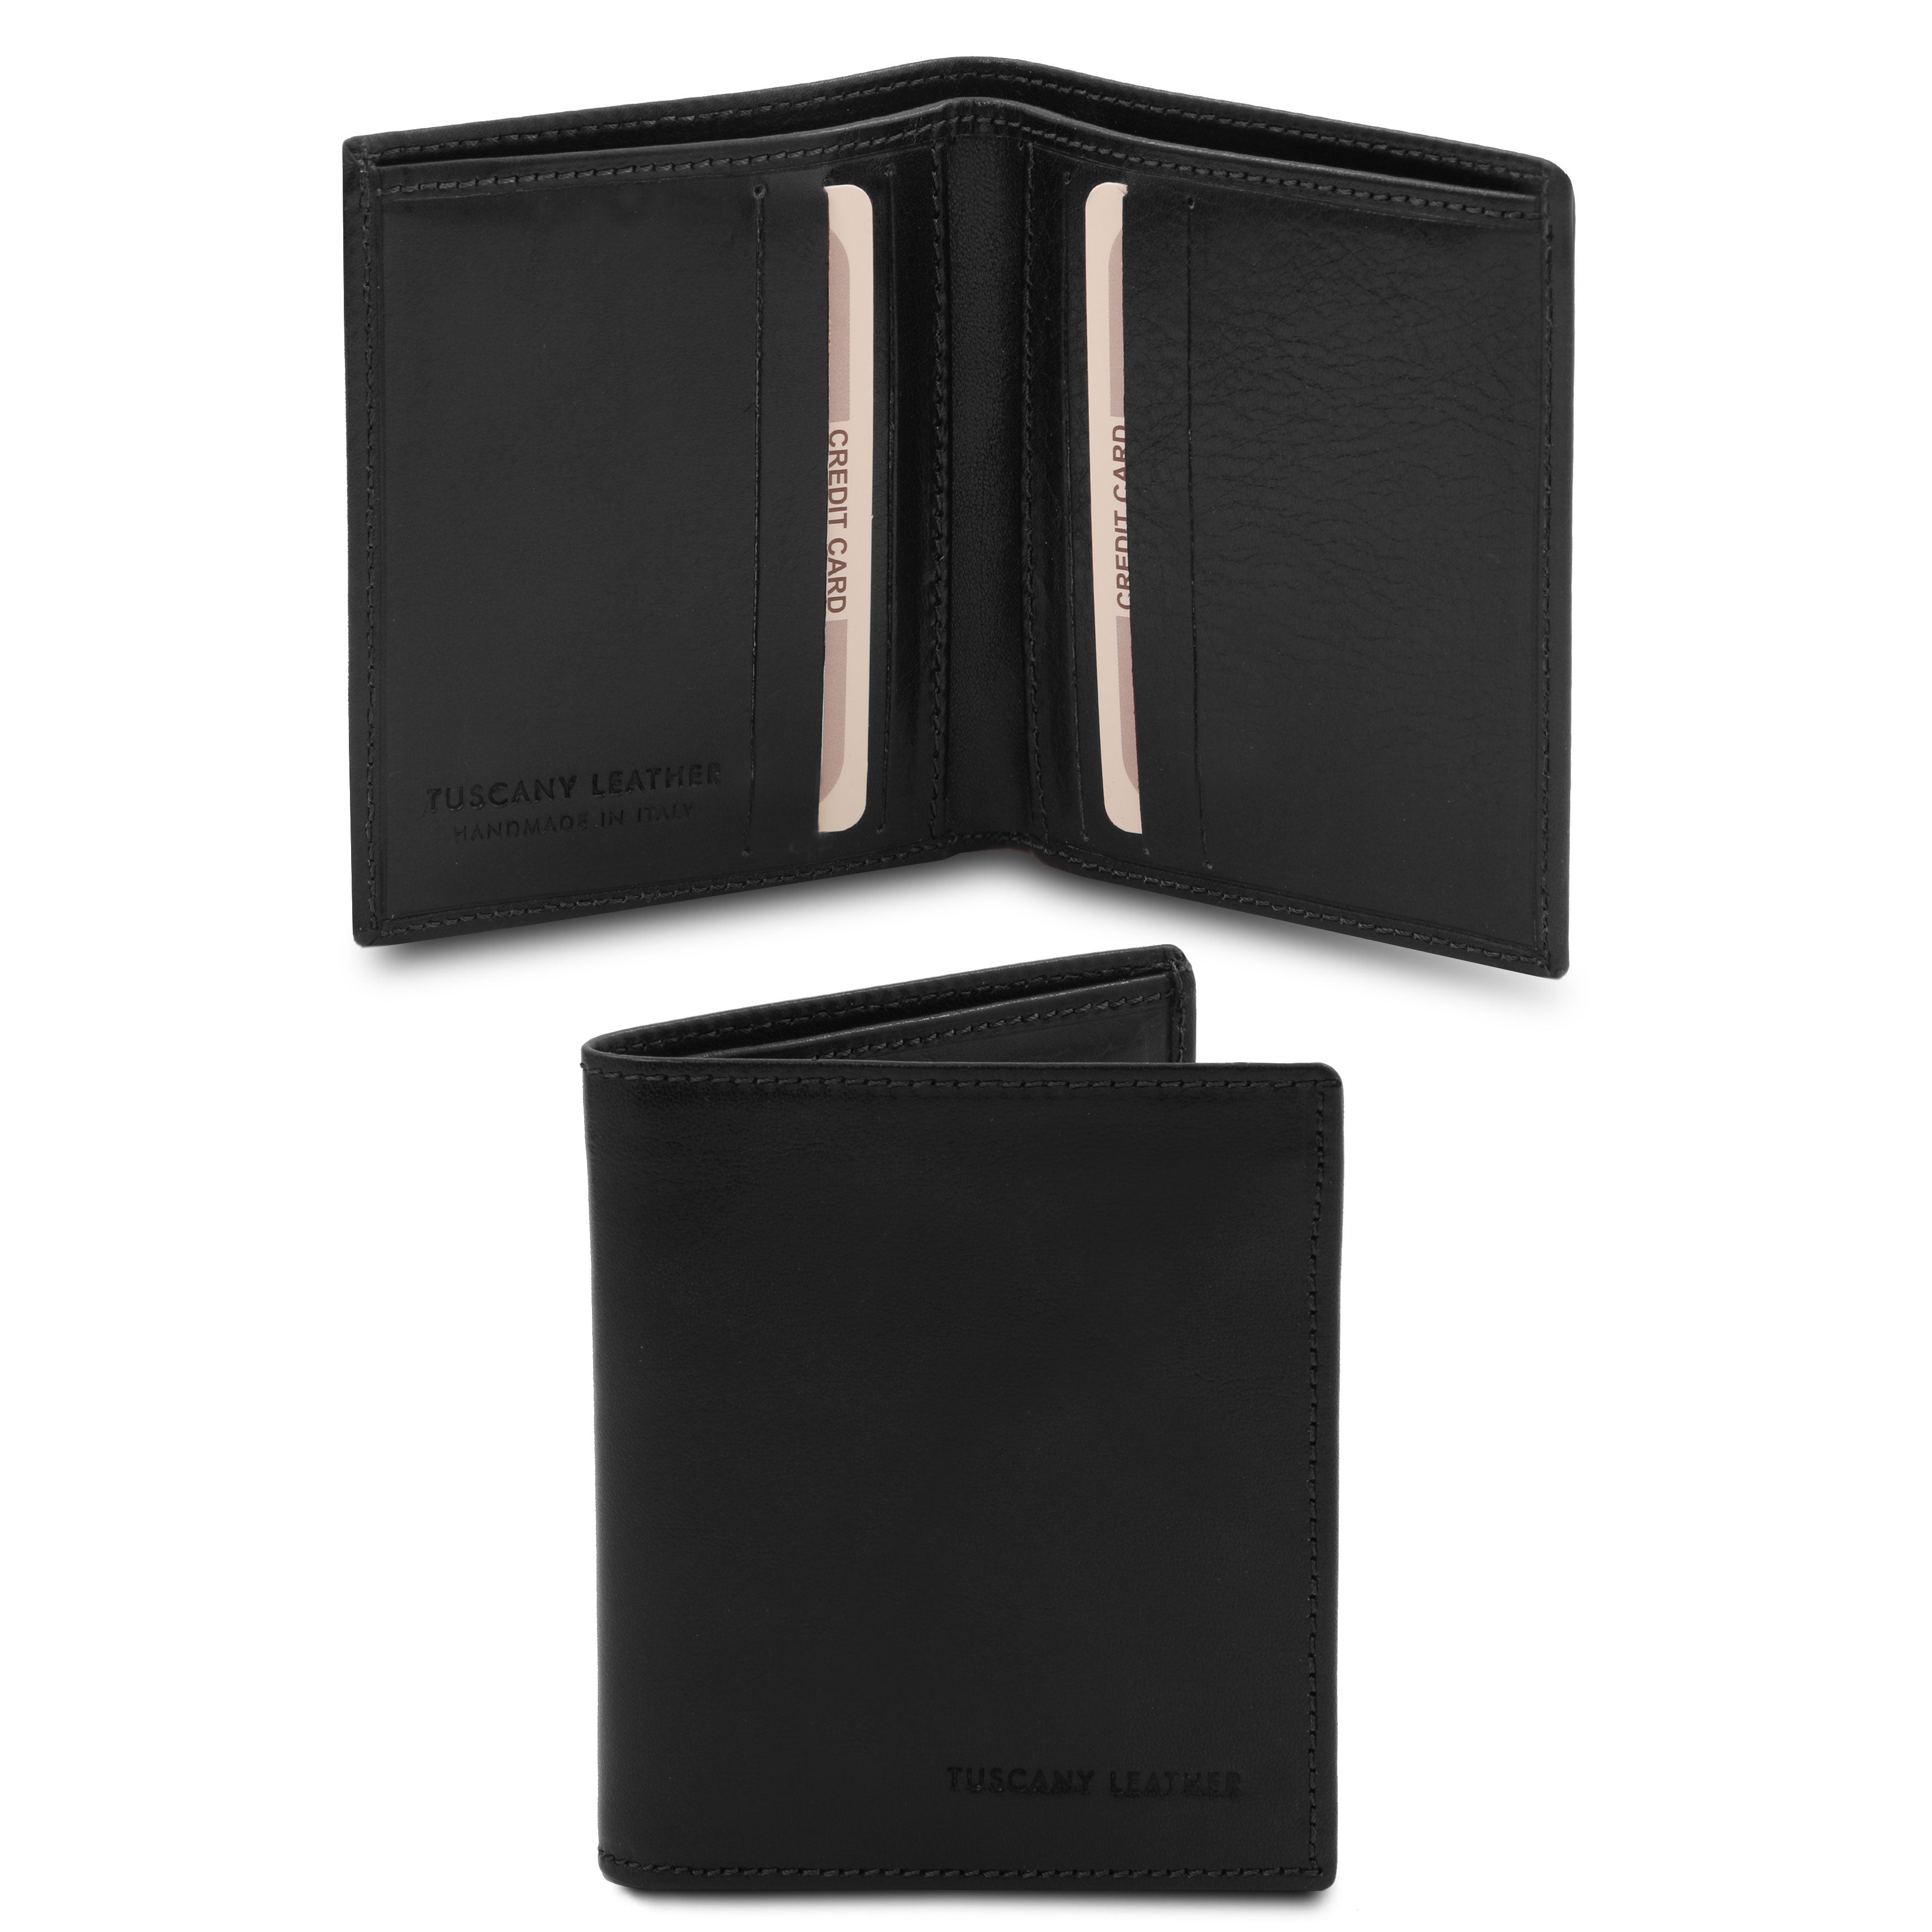 Tuscany Leather exclusieve twee voudige leren portemonnee voor heren zwart